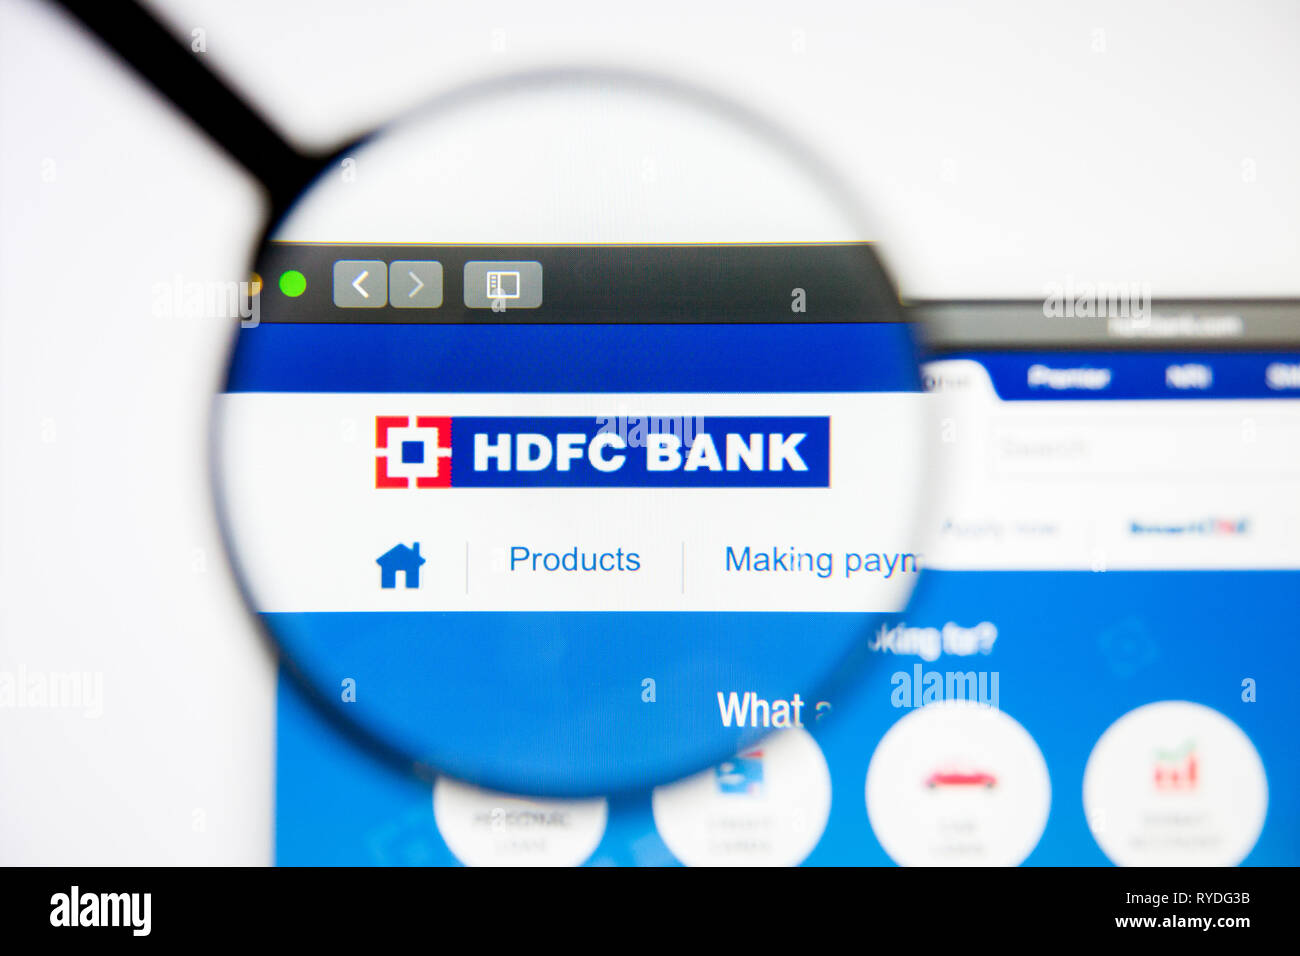 Los Angeles, Californie, USA - 5 mars 2019 : HDFC accueil du site. Logo HDFC visible sur l'écran d'affichage, de rédaction d'illustration Banque D'Images